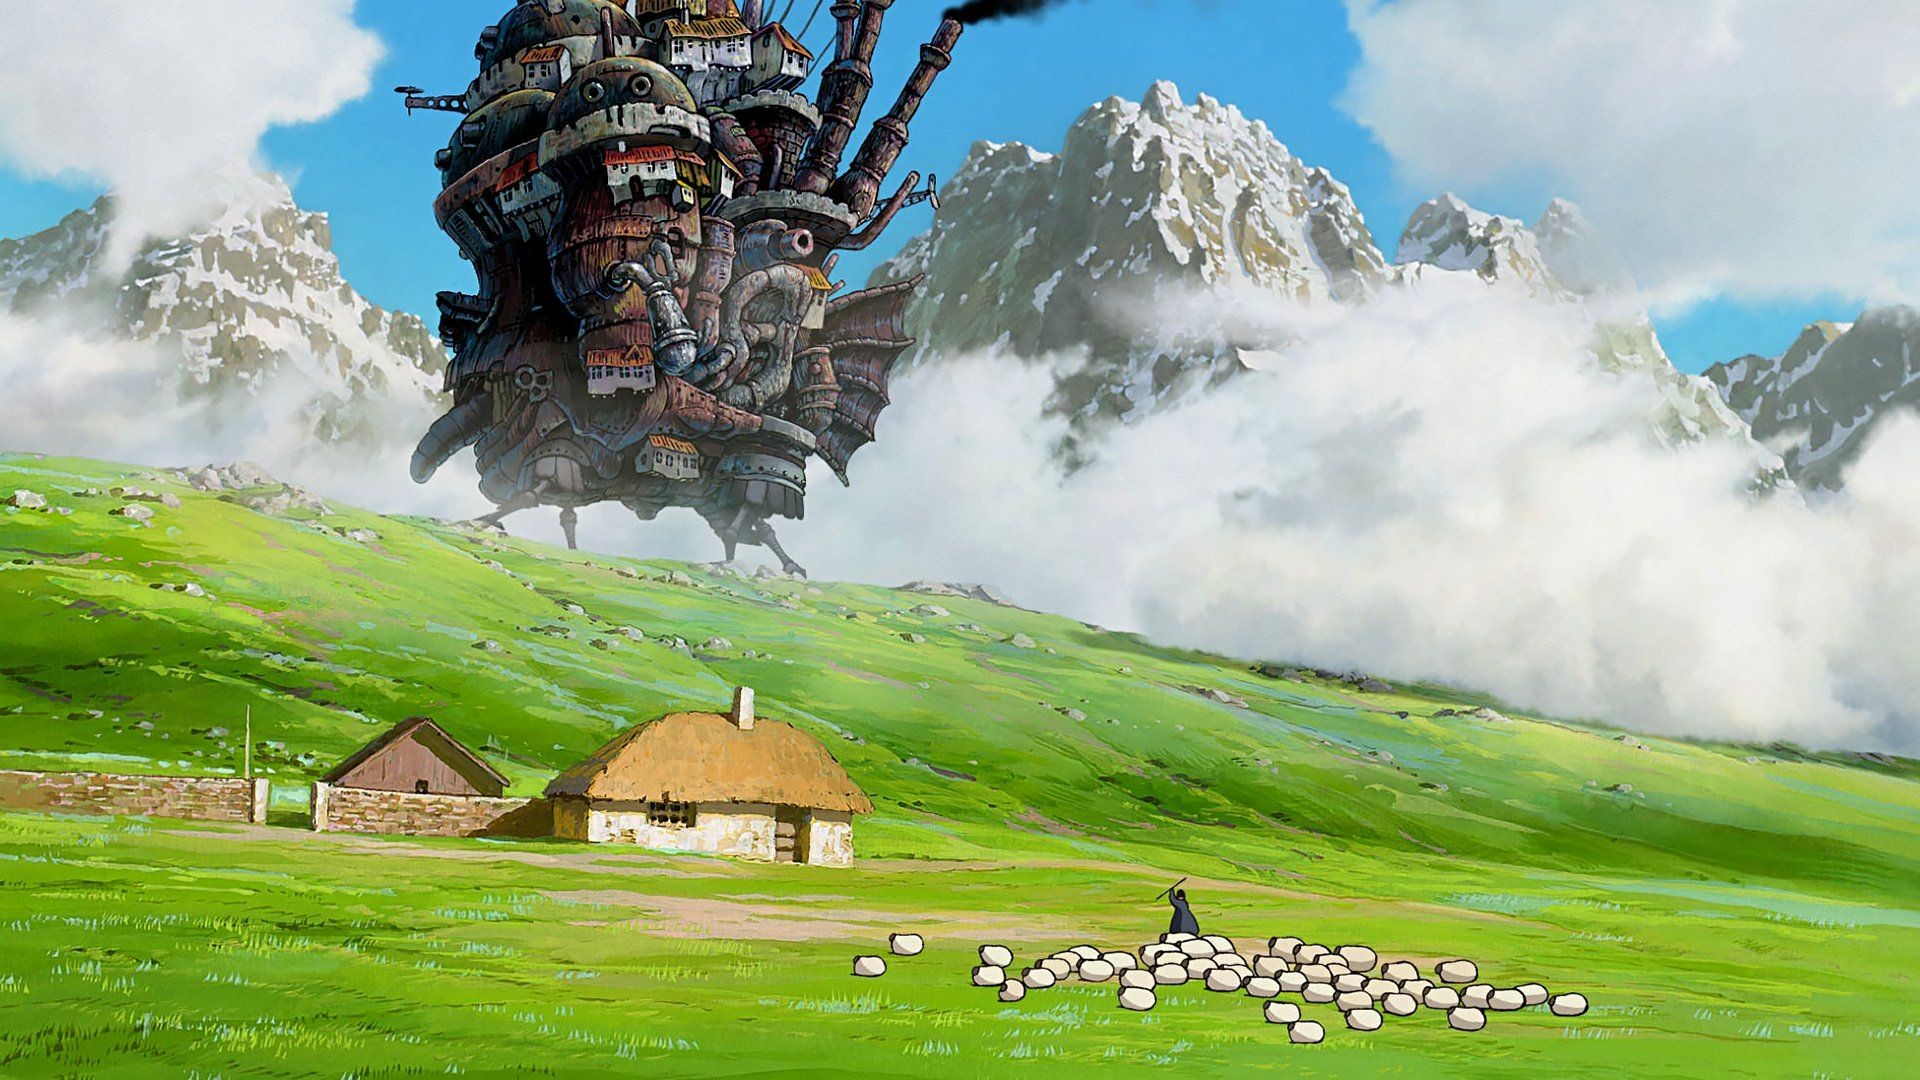 Nếu bạn đang tìm kiếm một bức hình nền lâu đài di động độ phân giải cao, thì hãy mở ngay bức hình nền HD lâu đài di động của Howl. Sự nghiệp vẽ tranh tuyệt mỹ của Miyazaki đã được re-created đến các chi tiết nhỏ nhất, giúp bạn tận hưởng vẻ đẹp của lâu đài di động này một cách toàn diện.